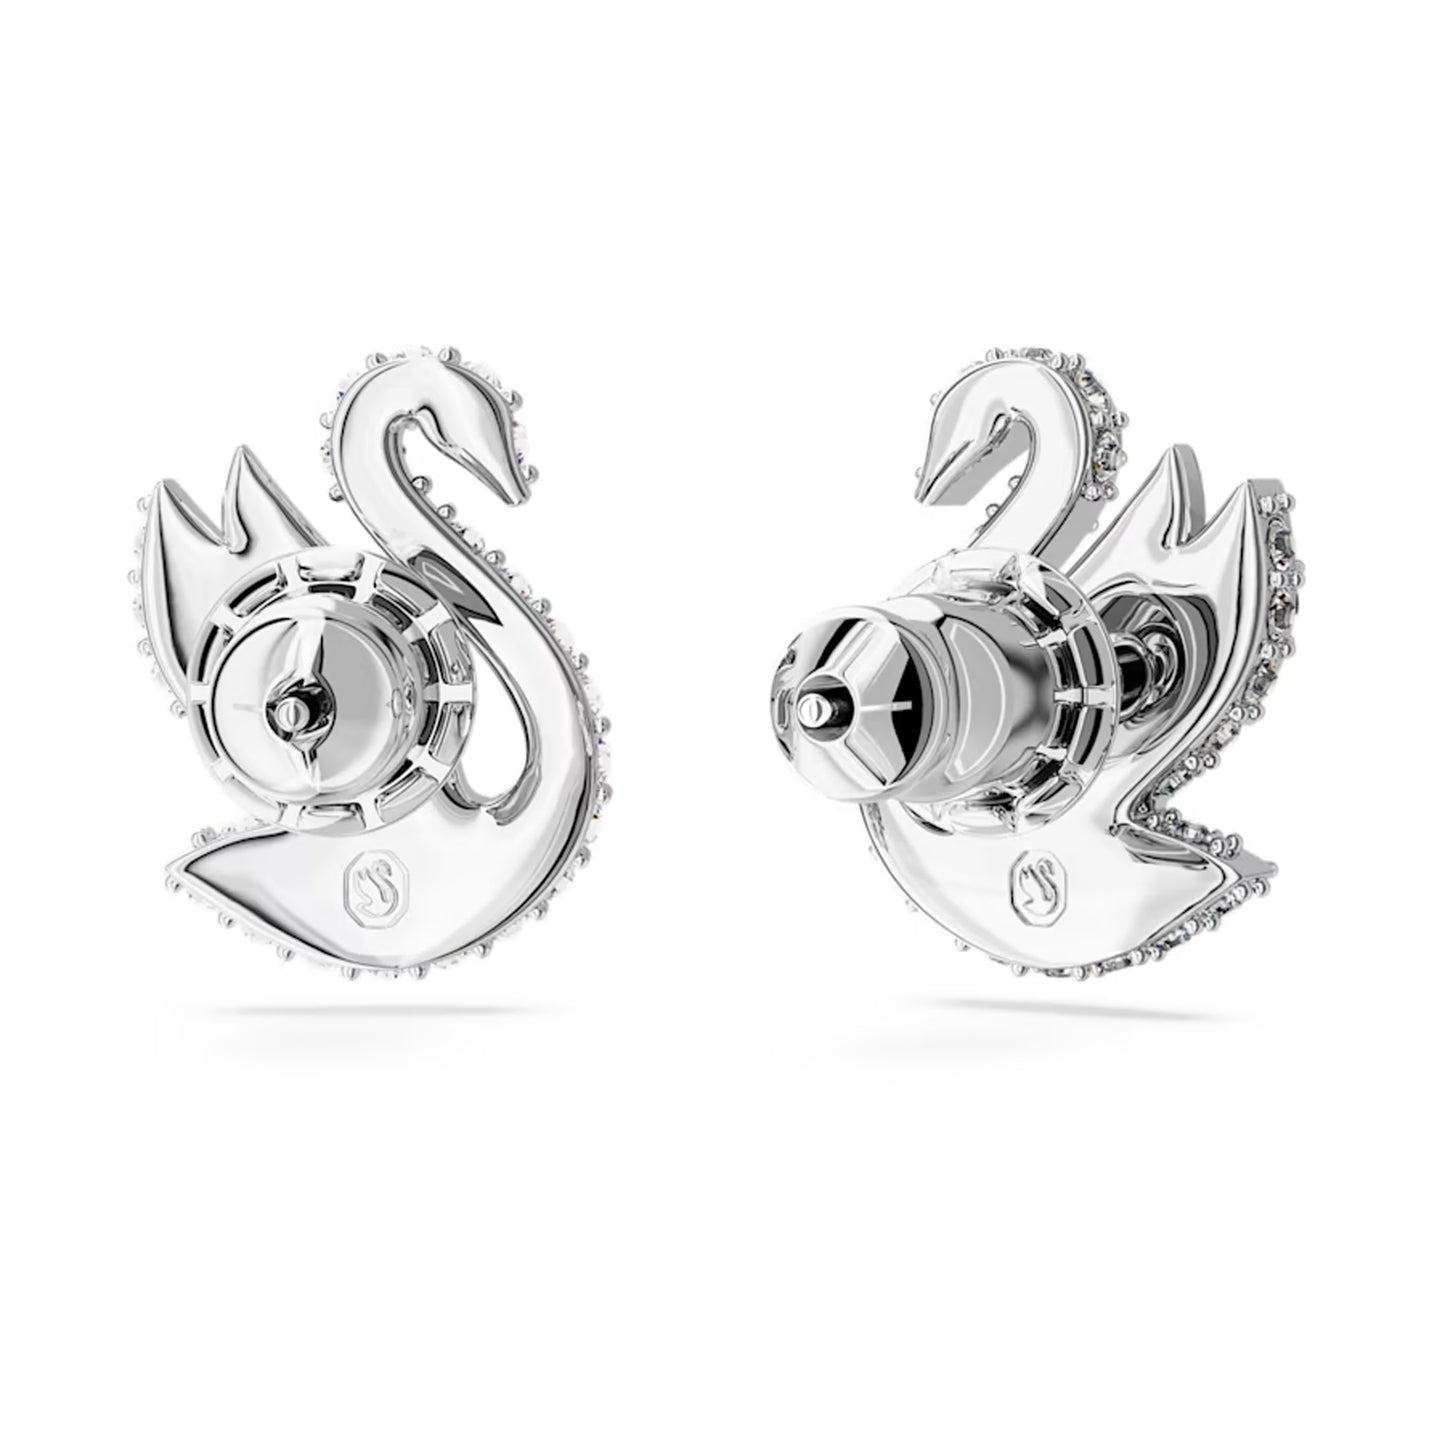 Swarovski Iconic Swan stud earrings